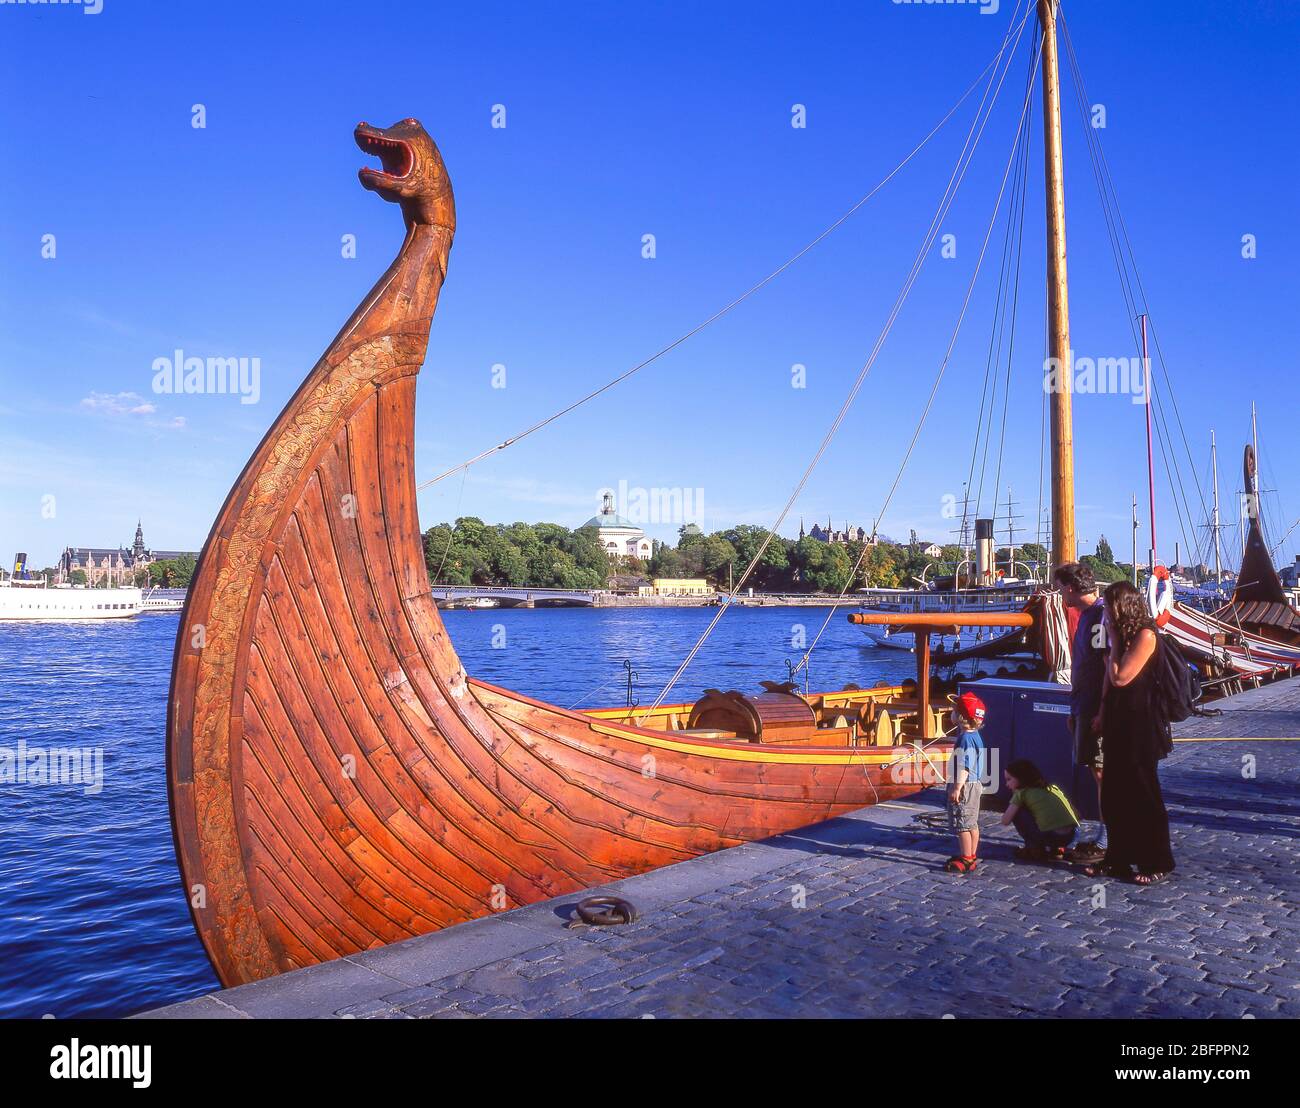 Réplique du navire viking amarré dans le port, Gamla Stan (vieille ville), Stadsholmen, Stockholm, Royaume de Suède Banque D'Images